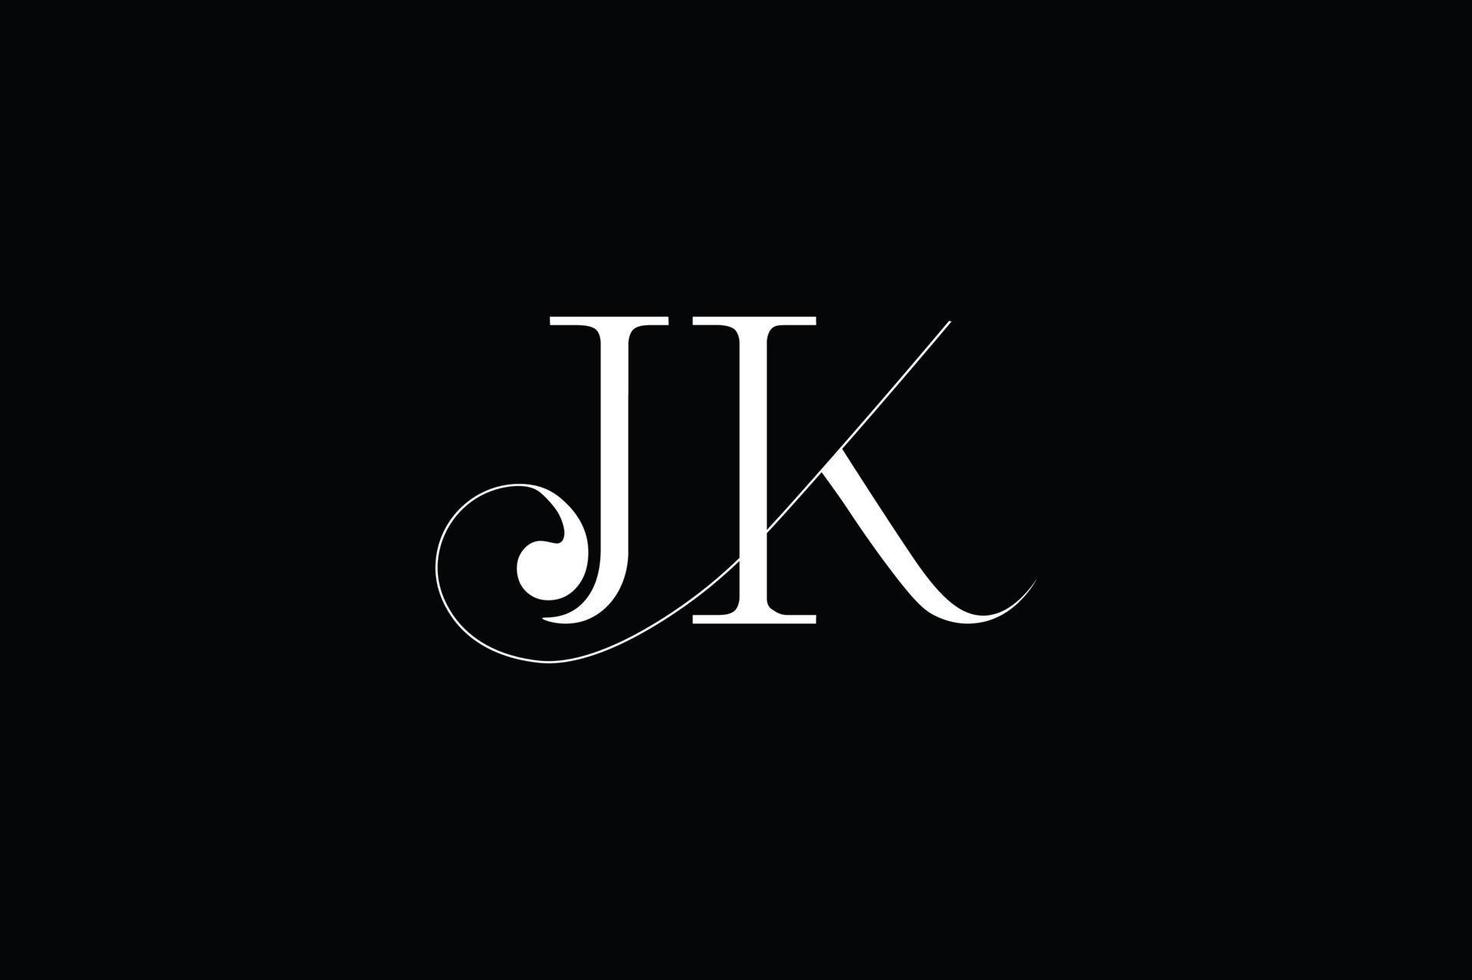 jk último logotipo, jk ligadura logotipo vetor